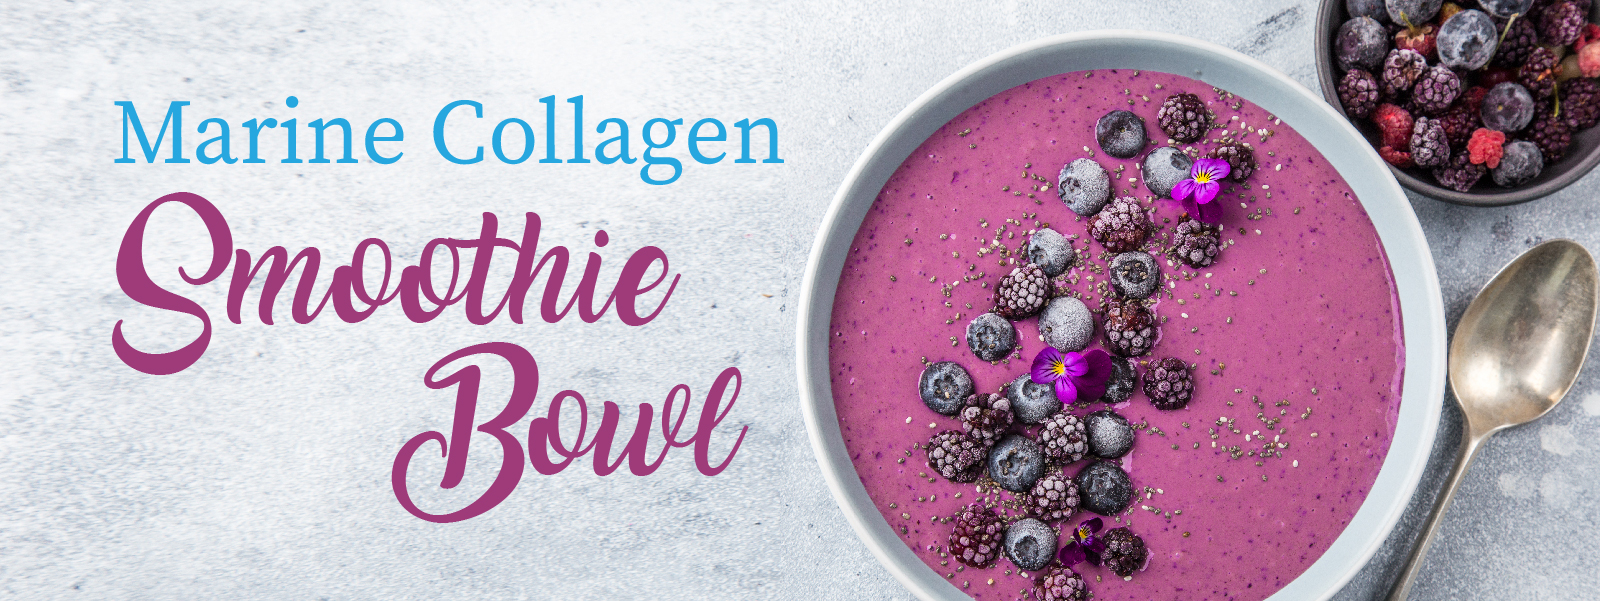 Collagen Smoothie Bowl